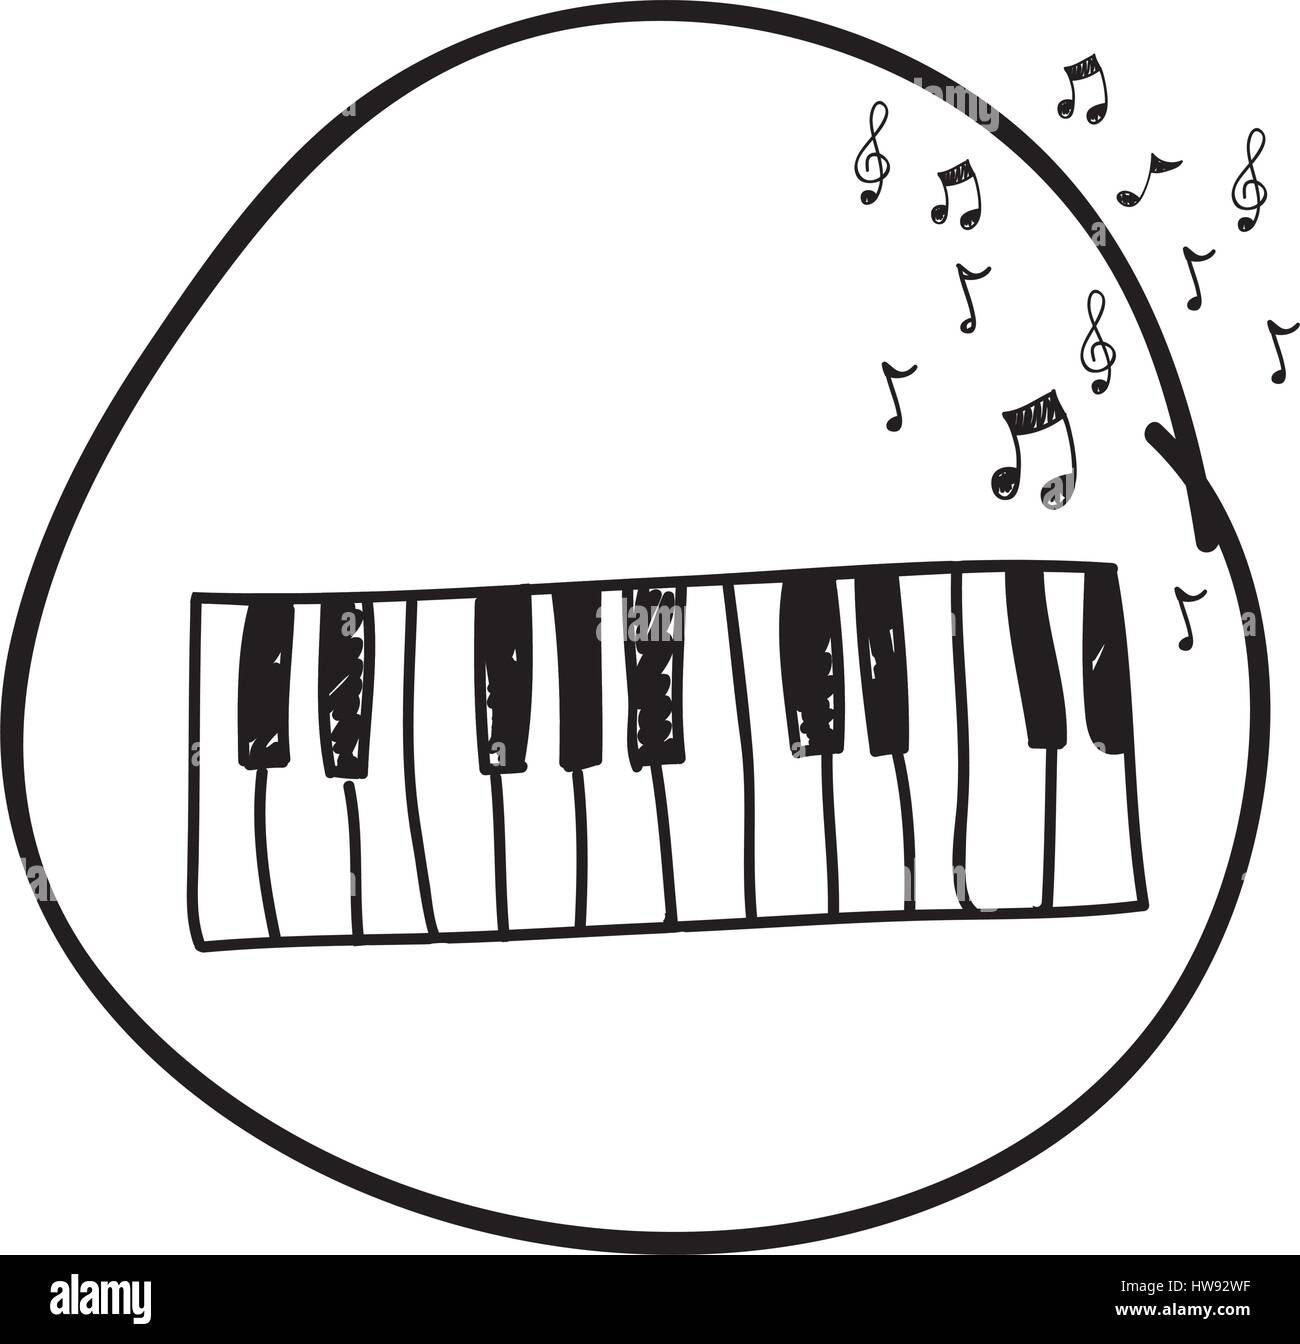 Monocromatico disegno a mano di tastiera di pianoforte in cerchio e note  musicali Immagine e Vettoriale - Alamy